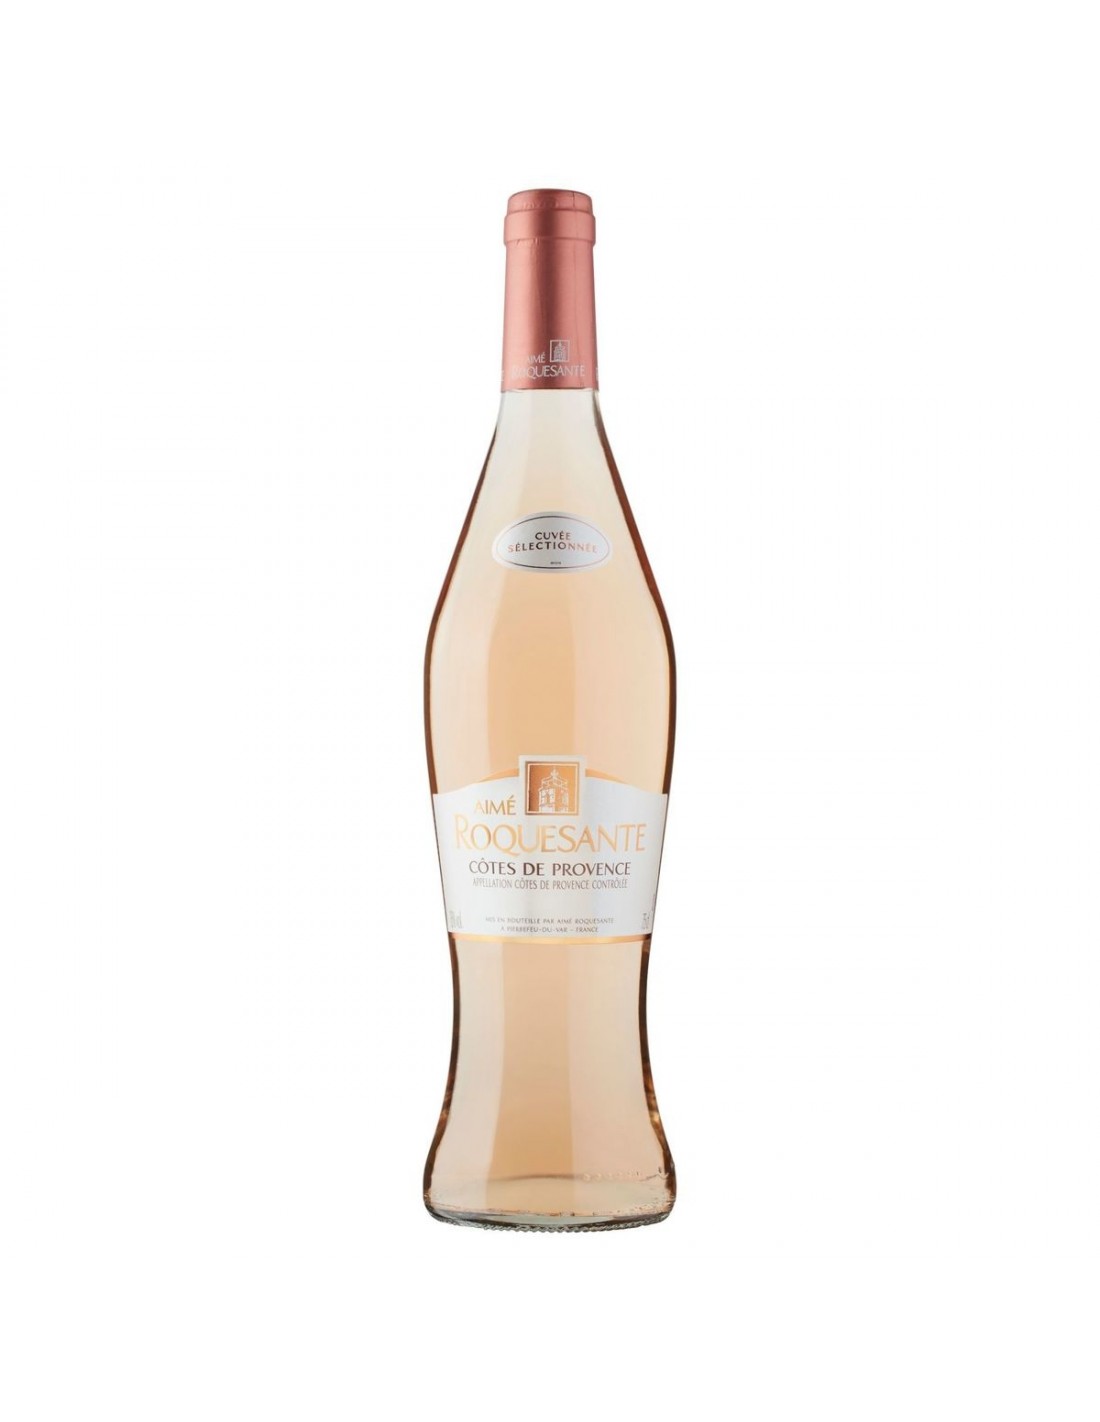 Vin roze, Cotes De Provence Aime Roquesante, 12.5% alc., 0.75L, Franta Aimé Roquesante